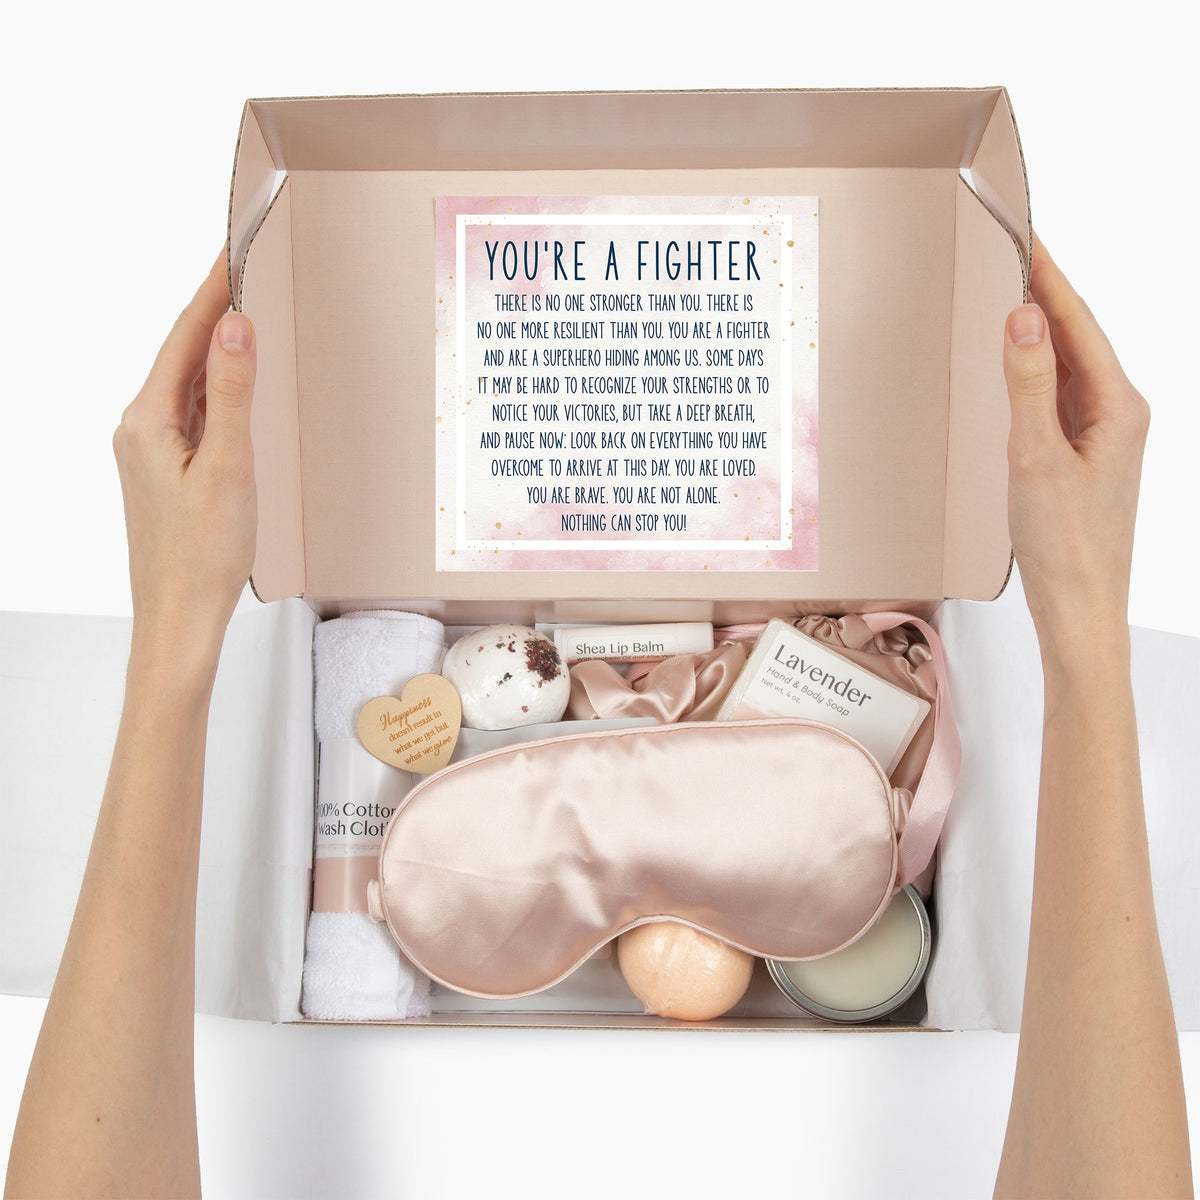 Cancer Battler Luxury Spa Gift Box